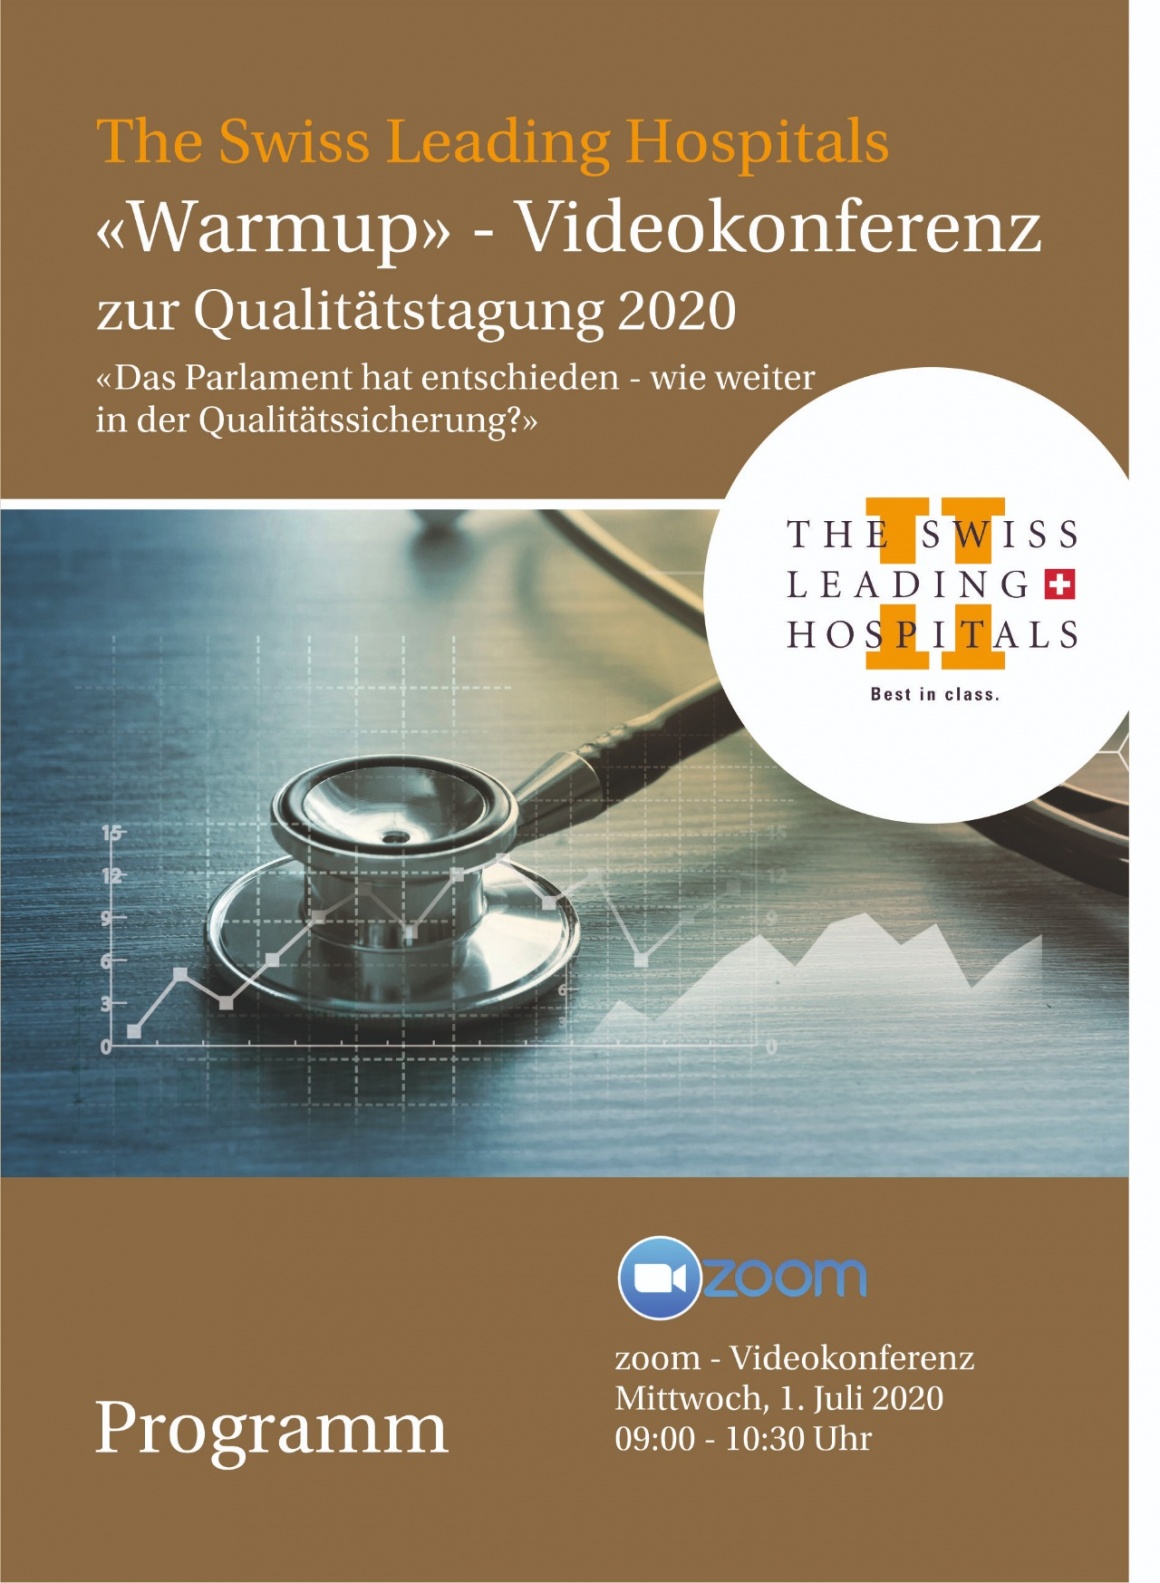 «Warmup» - Videokonferenz zur Qualitätstagung 2020